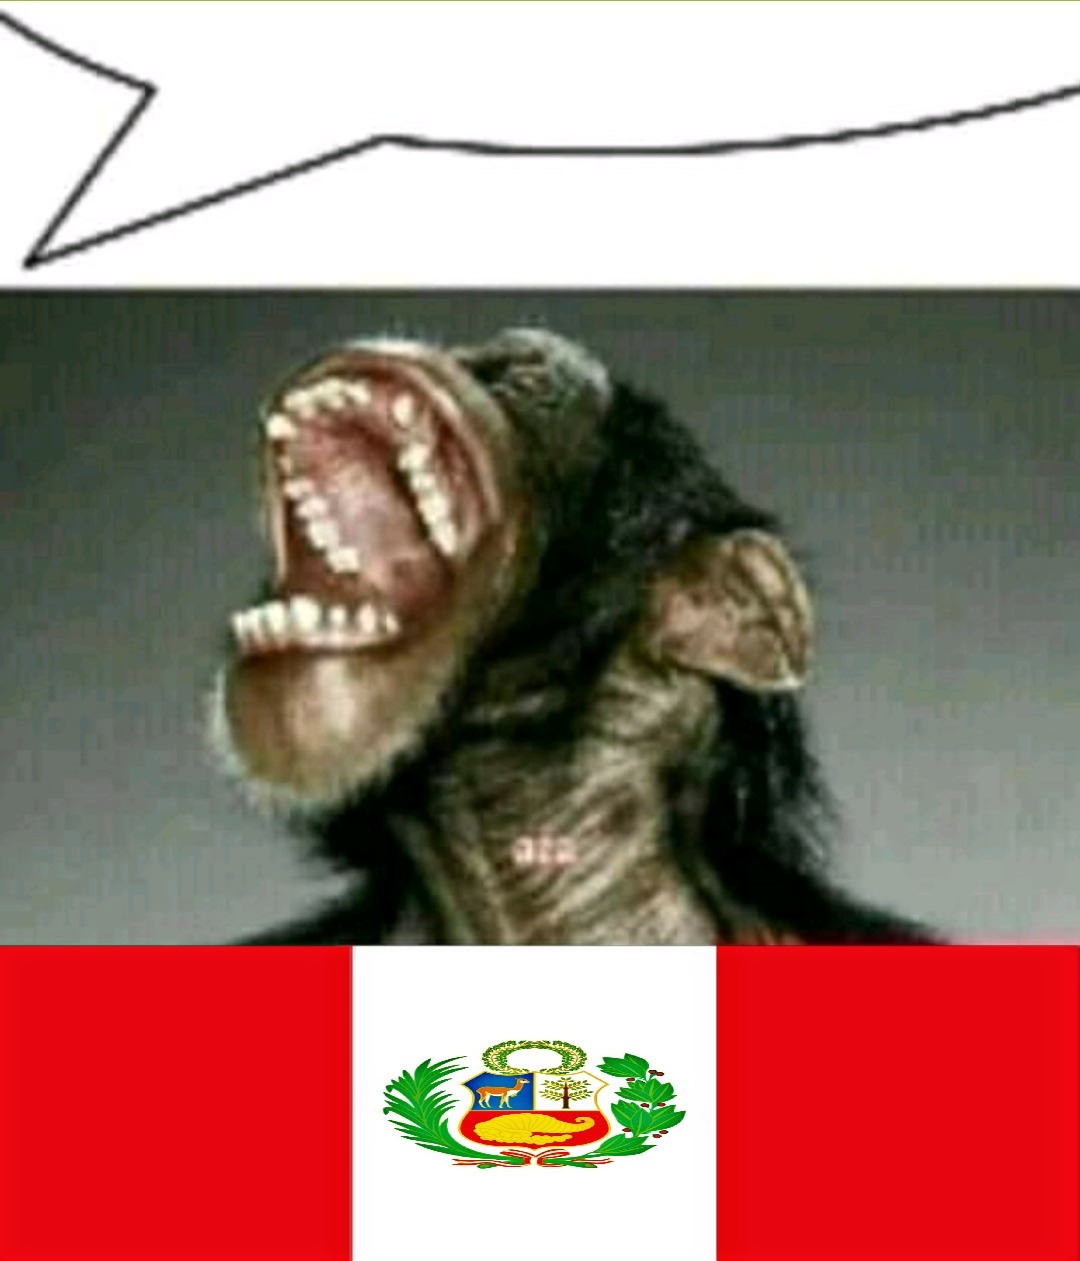 Los peruanos son los mejores en todo aspecto y además es el mejor país de toda Latinoamérica junta - meme